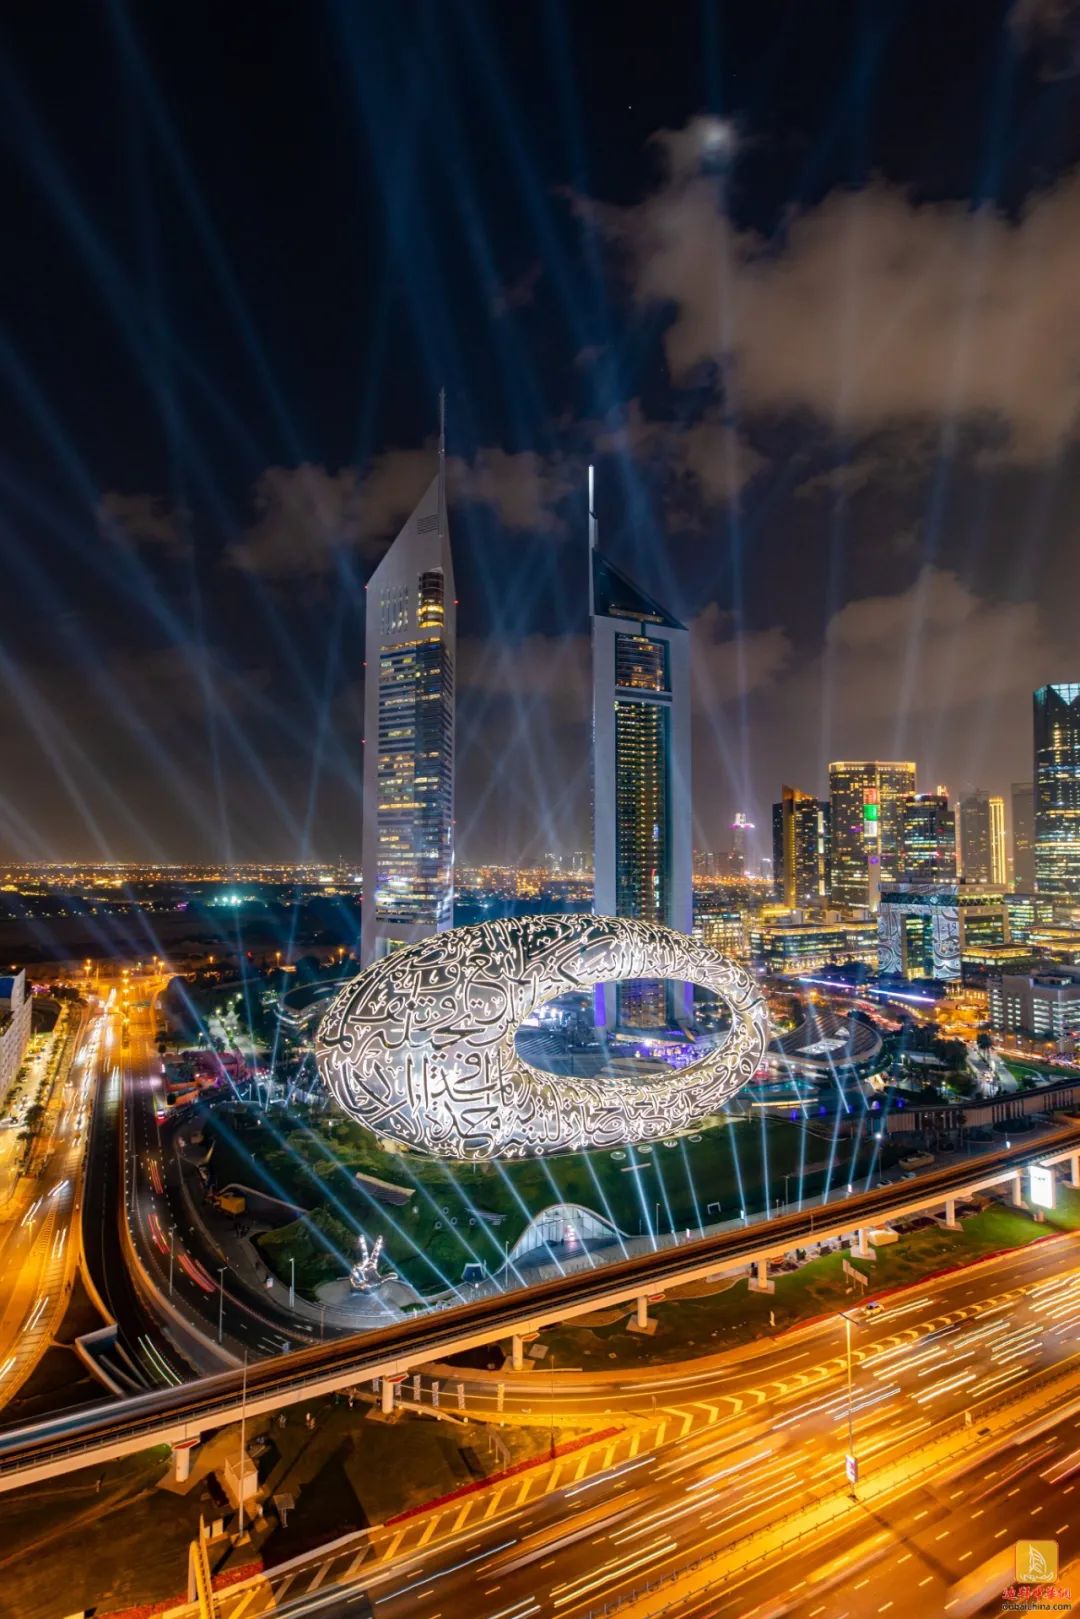 「视频」迪拜未来博物馆盛大开幕,科幻灯光秀十分震撼